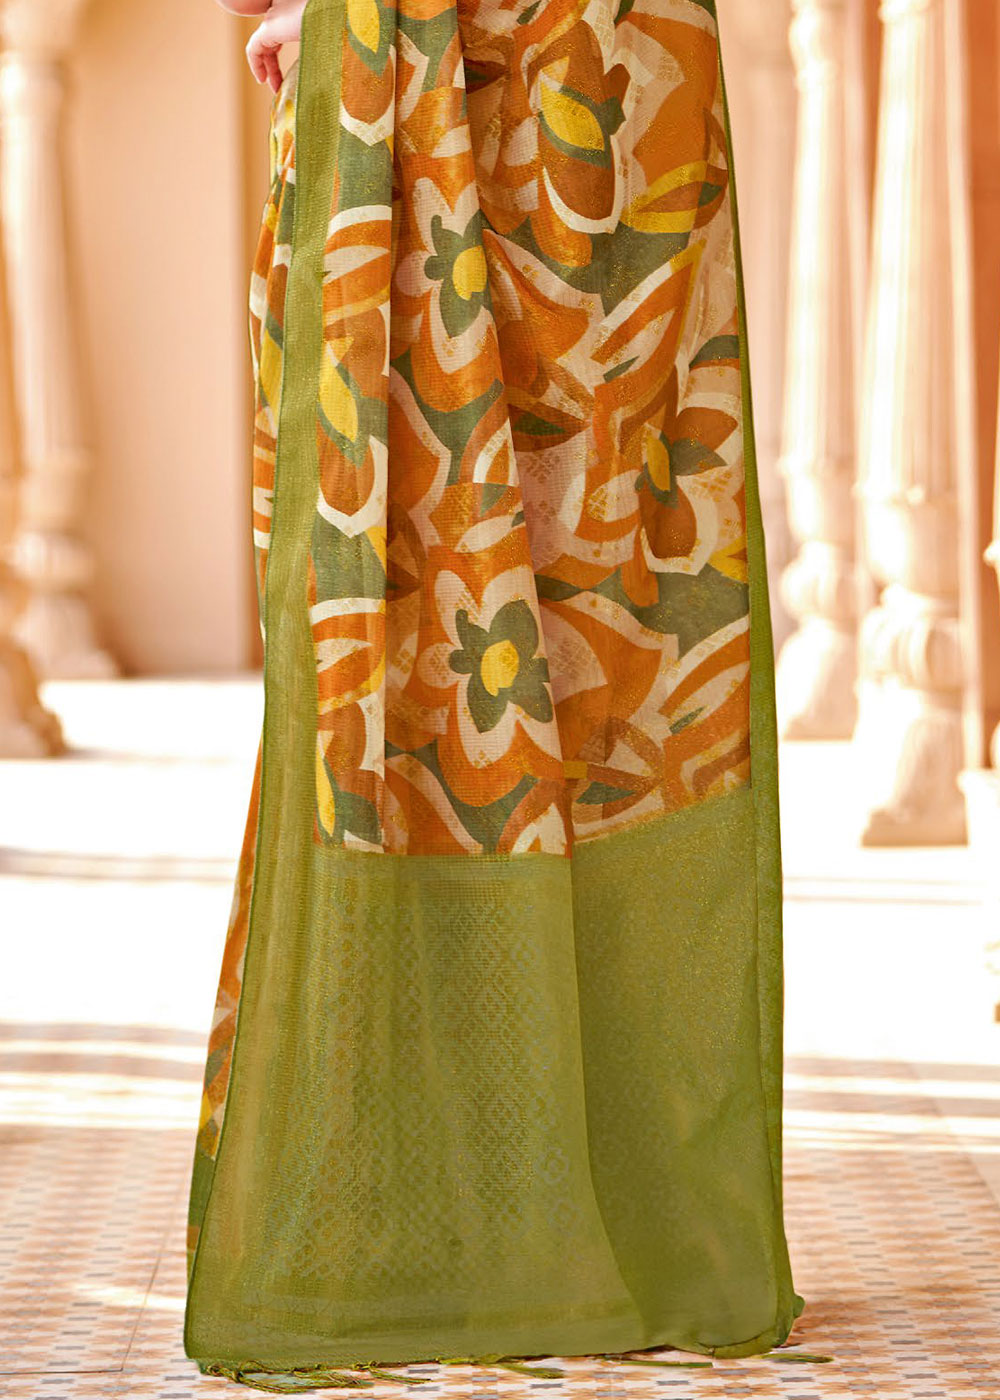 Buy MySilkLove Brandy Punch Orange and Green Floral Printed Cotton Silk Saree Online